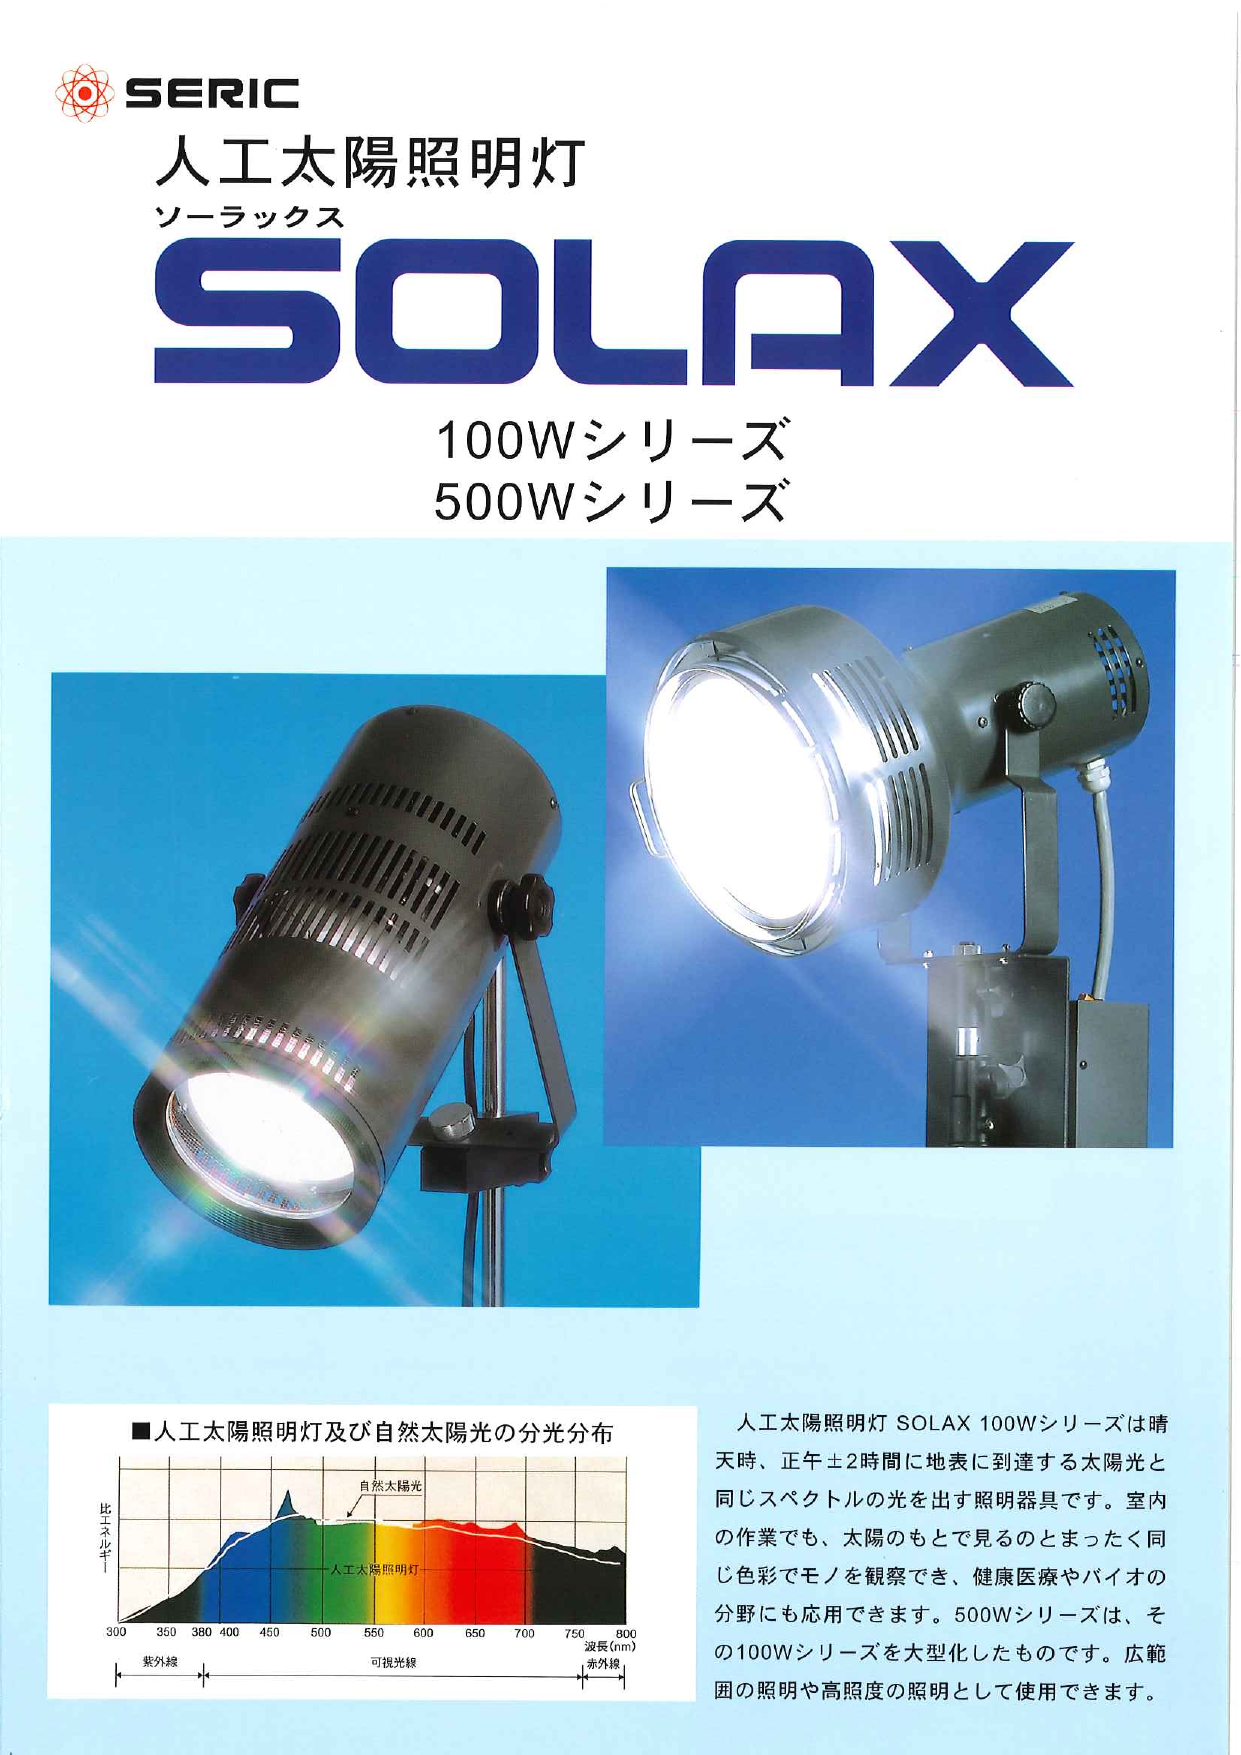 人工太陽照明灯 SOLAX（セリック株式会社）のカタログ無料ダウンロード 